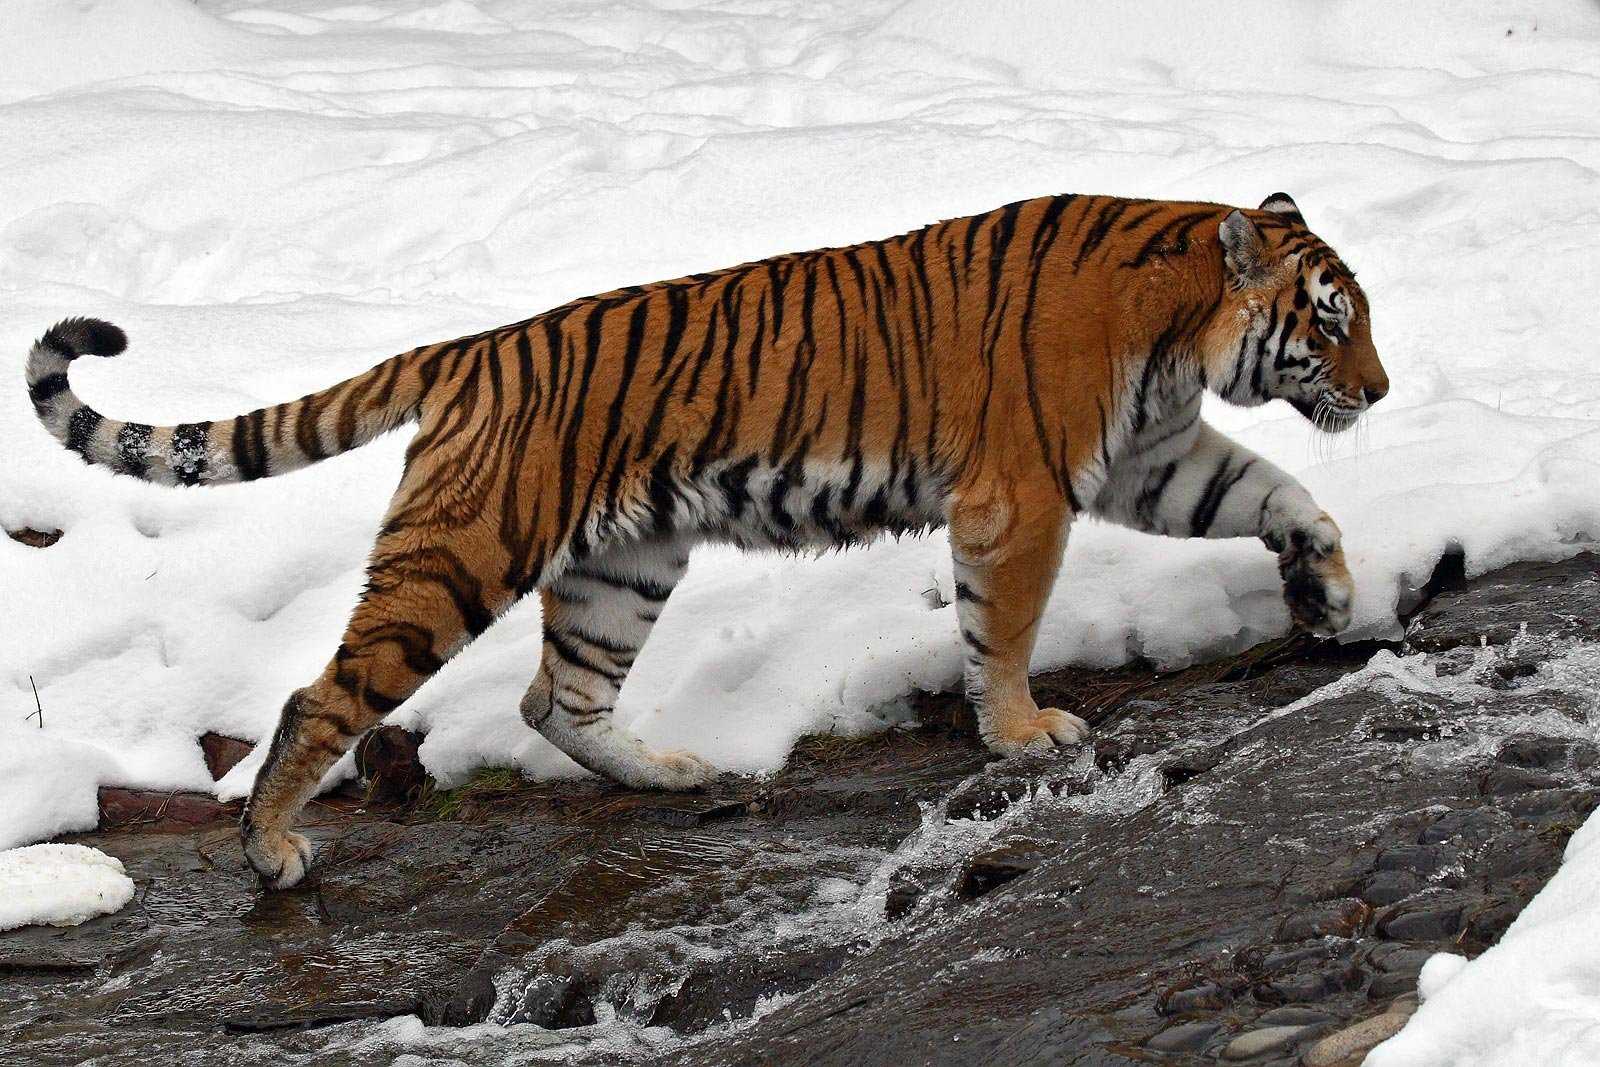 Уссурийский тигр. описание, особенности, образ жизни и среда обитания хищника | живность.ру